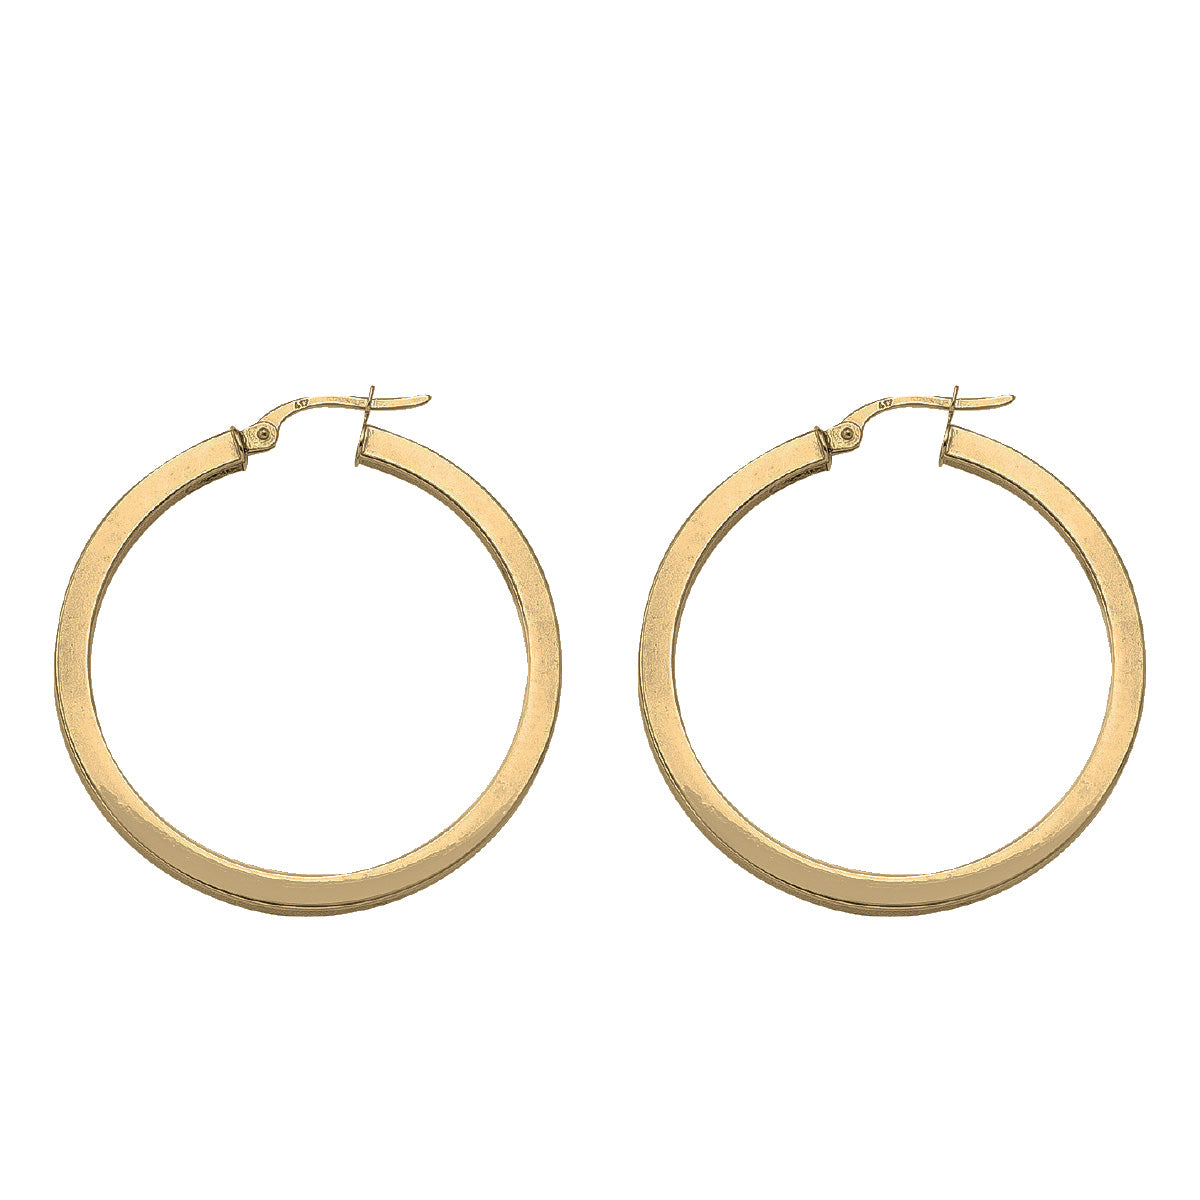 EH0102, Gold Earrings, Hoops, 2.5 mm Tubing